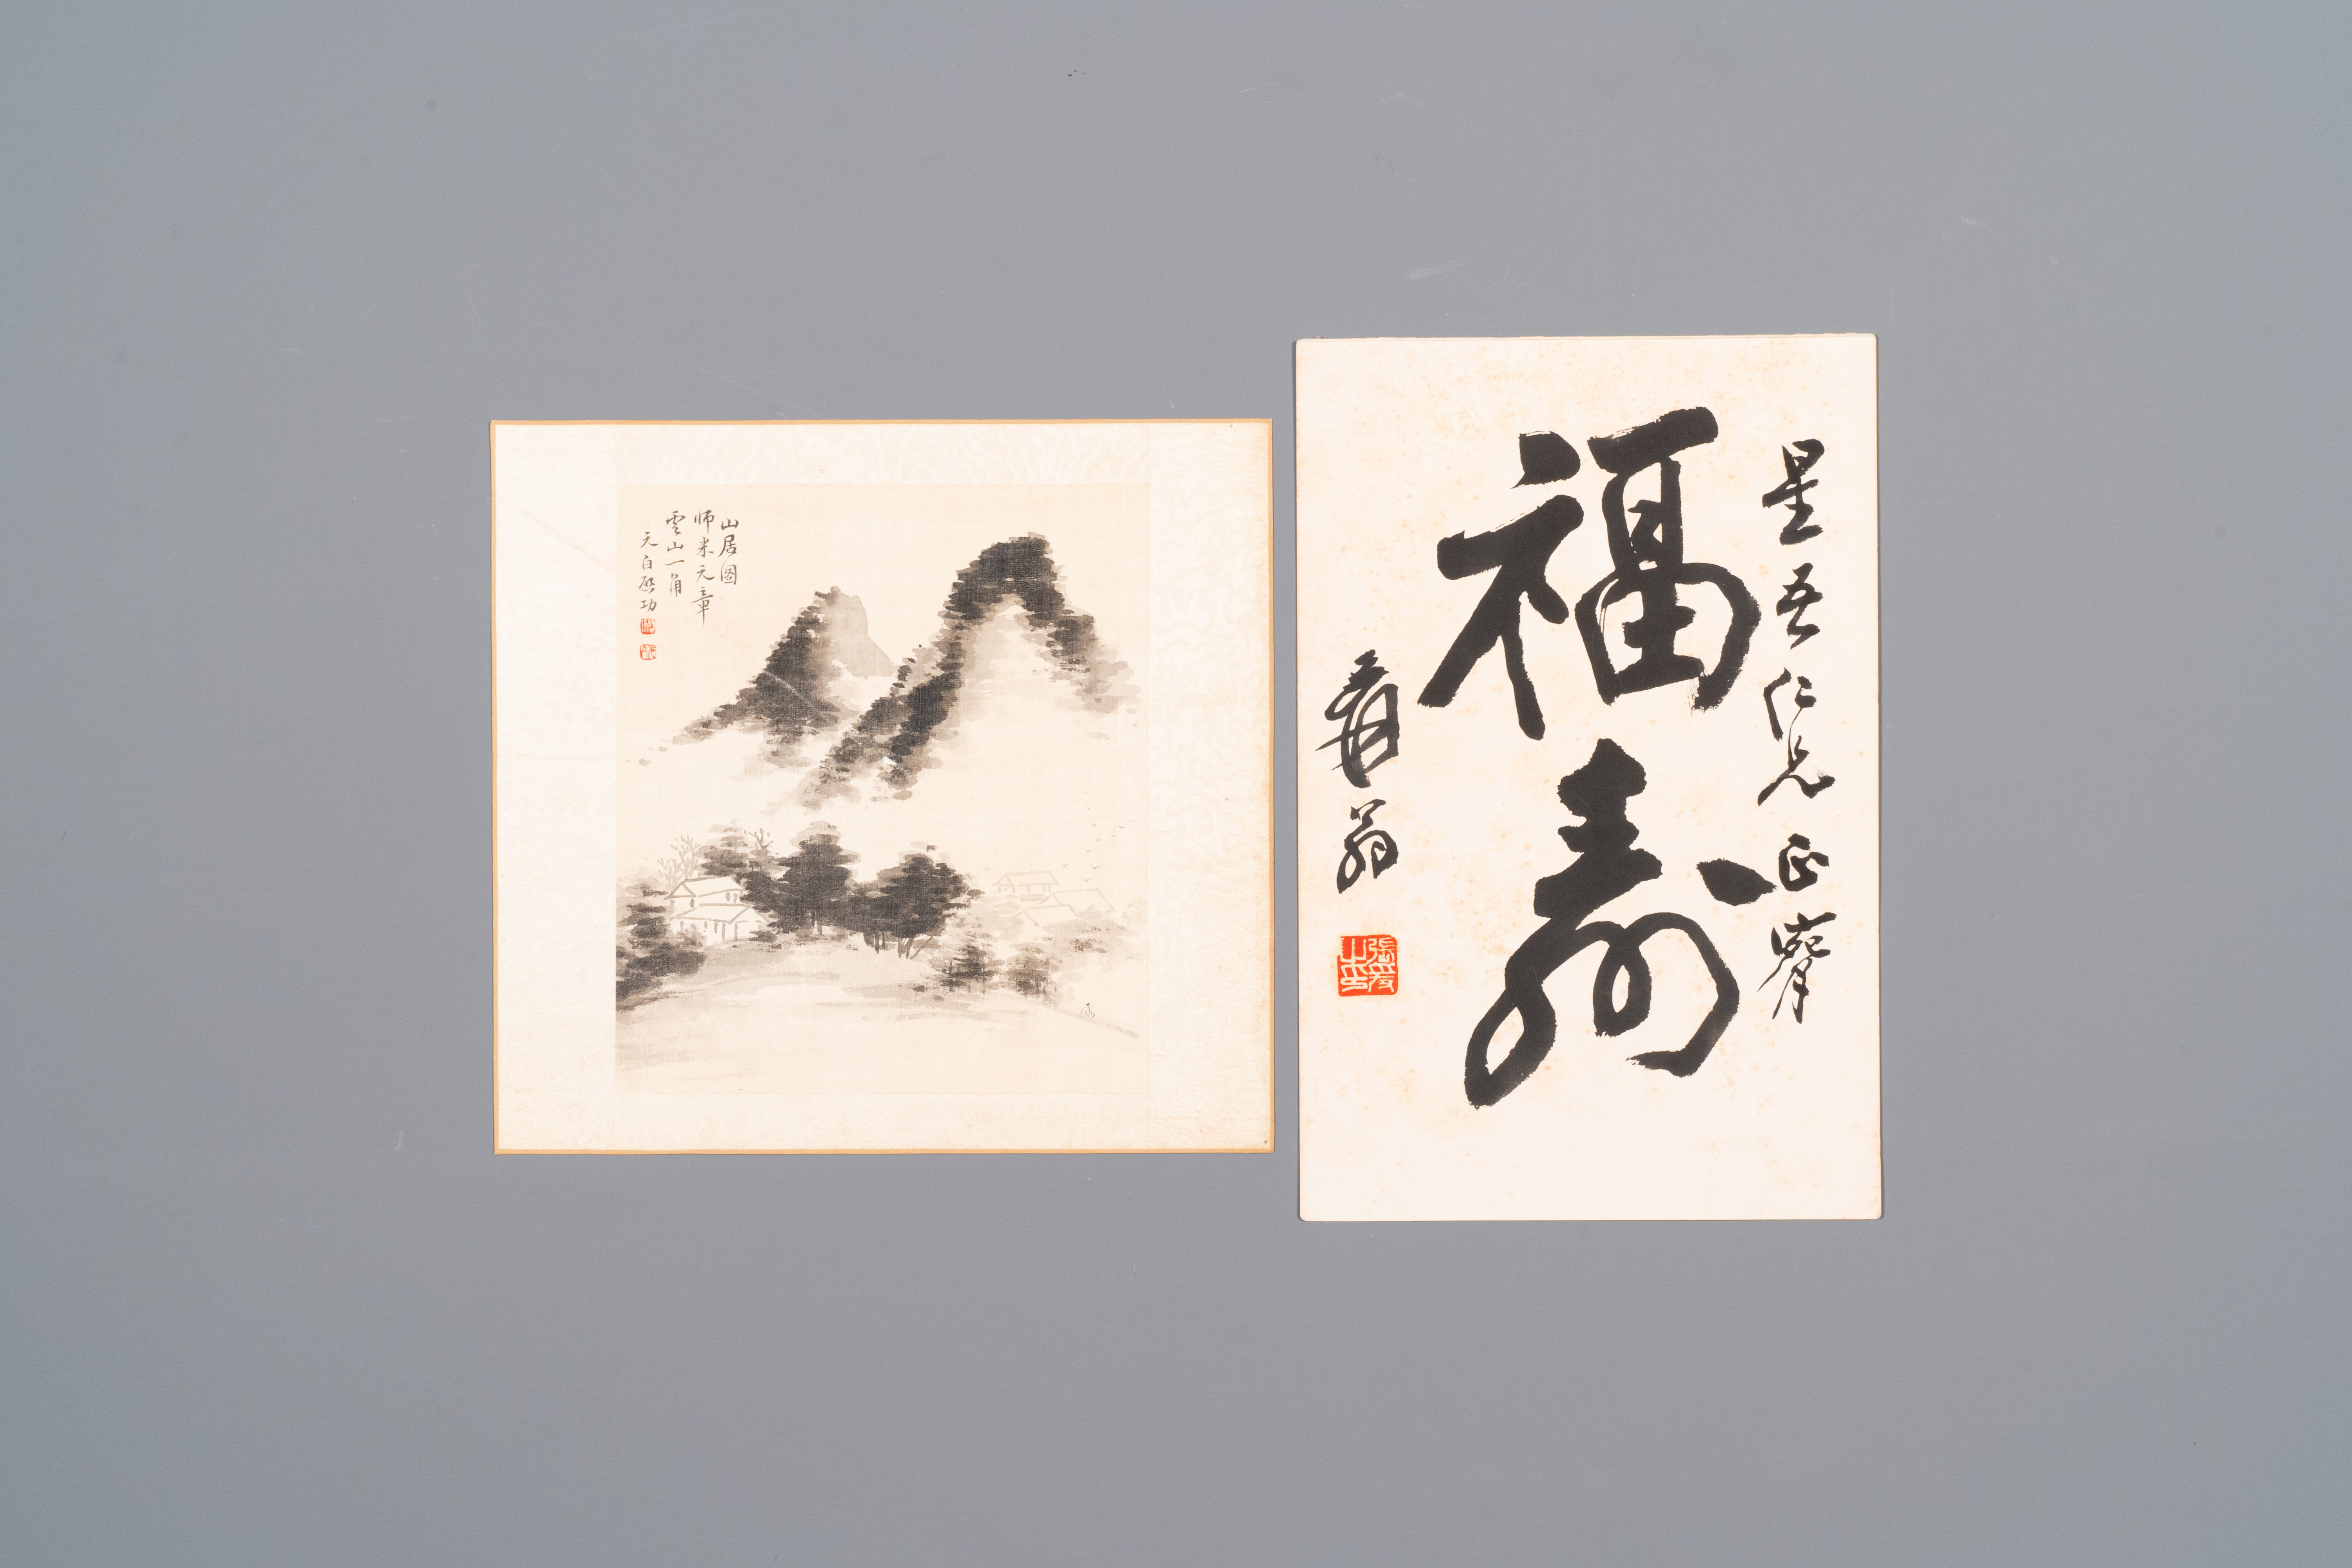 Followers of Qi Gong (1912-2005) and Zhang Daqian (1899-1983): 'Calligraphy and Mountainous landscap